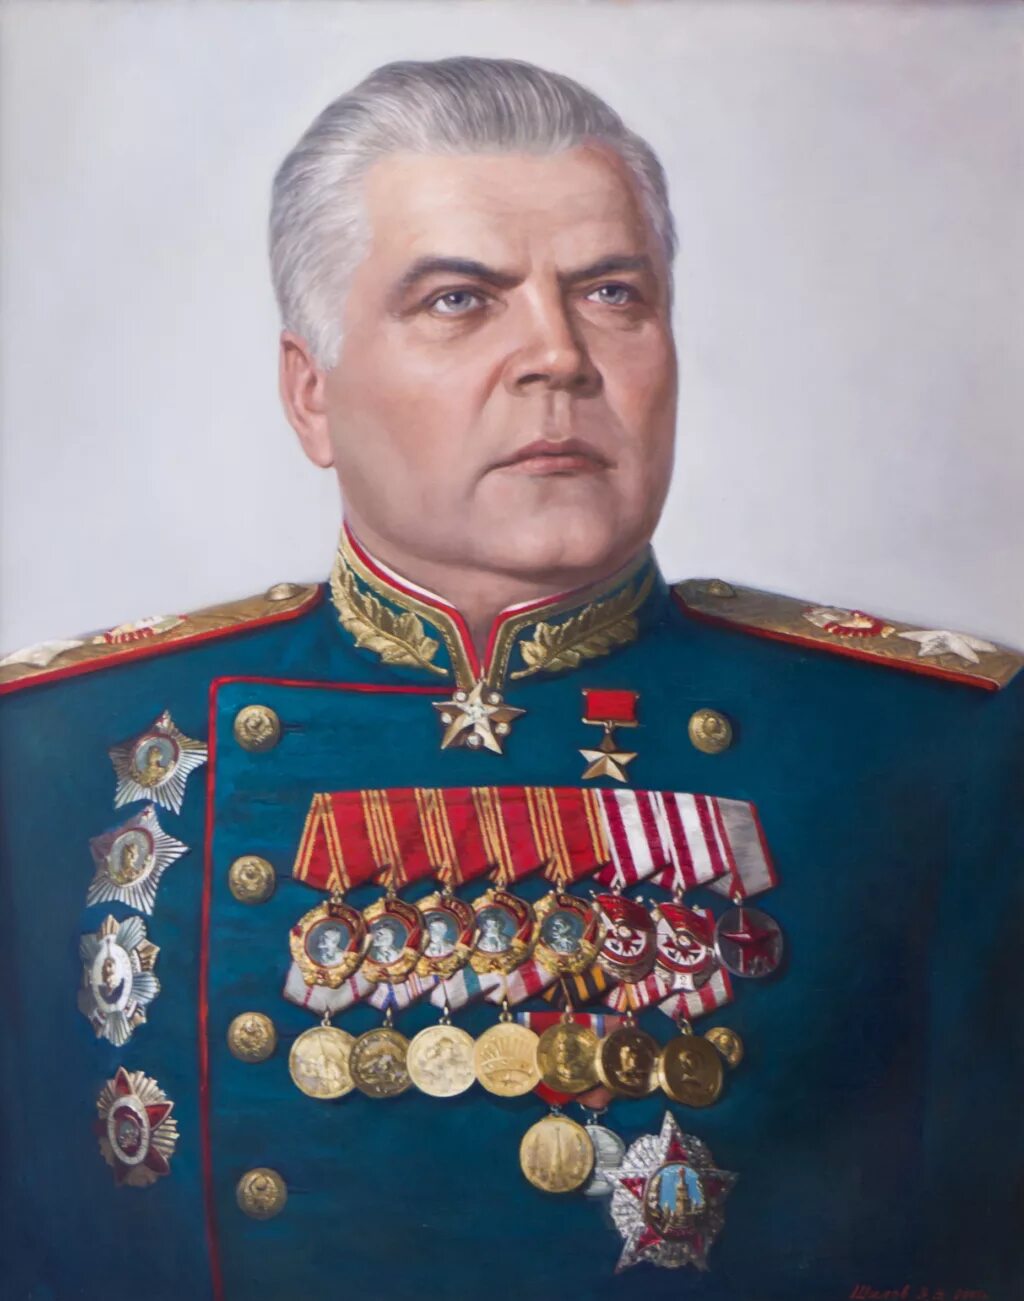 Какой маршал советского союза